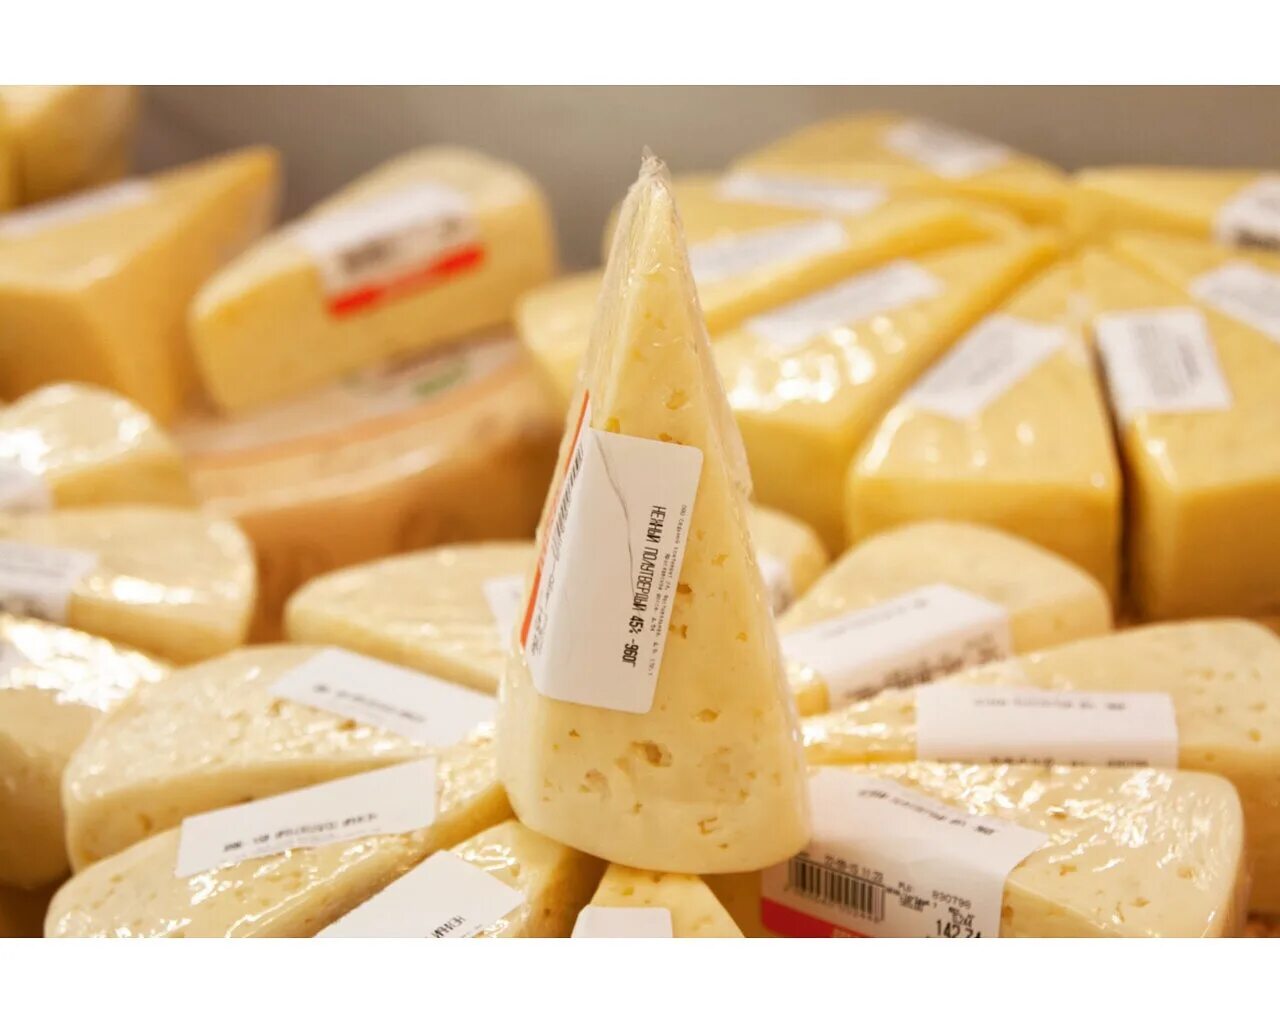 Сыр фасованный. Сыры фасованные. Упаковка сыра. Сыр в упаковке. Производители хорошего сыра